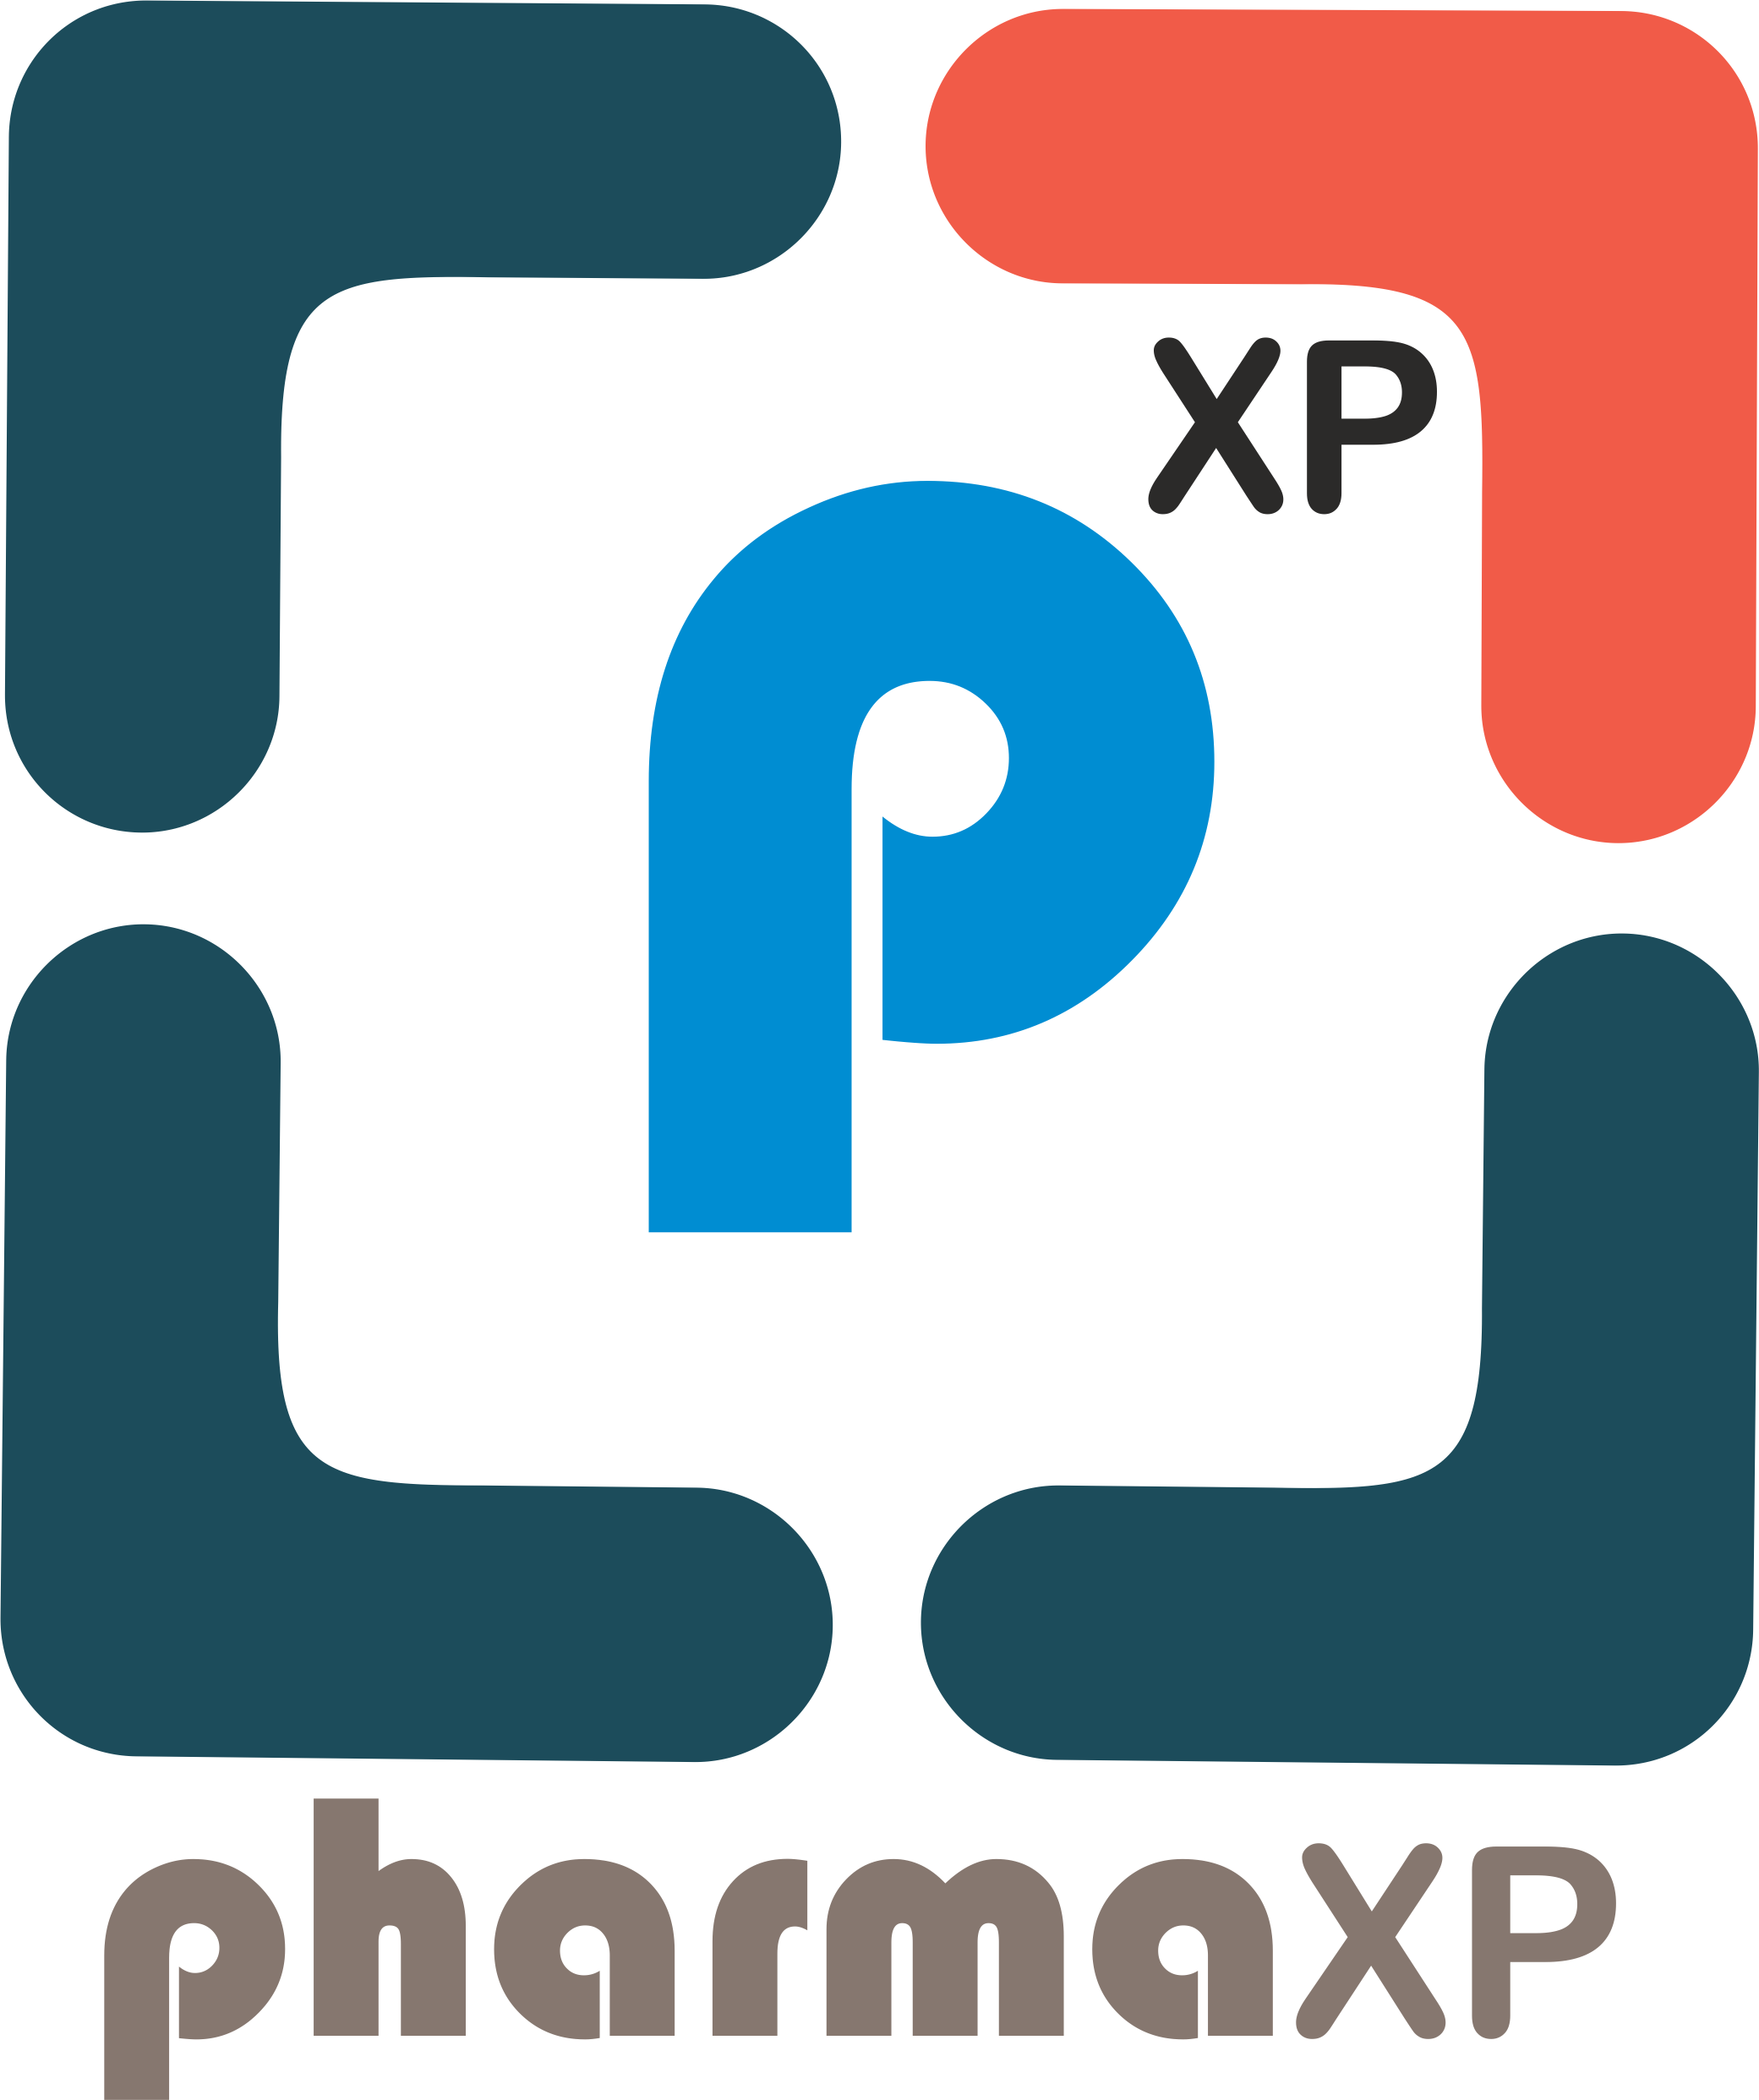 PharmaXP Social Networking platform for Pharmaceutical Industry